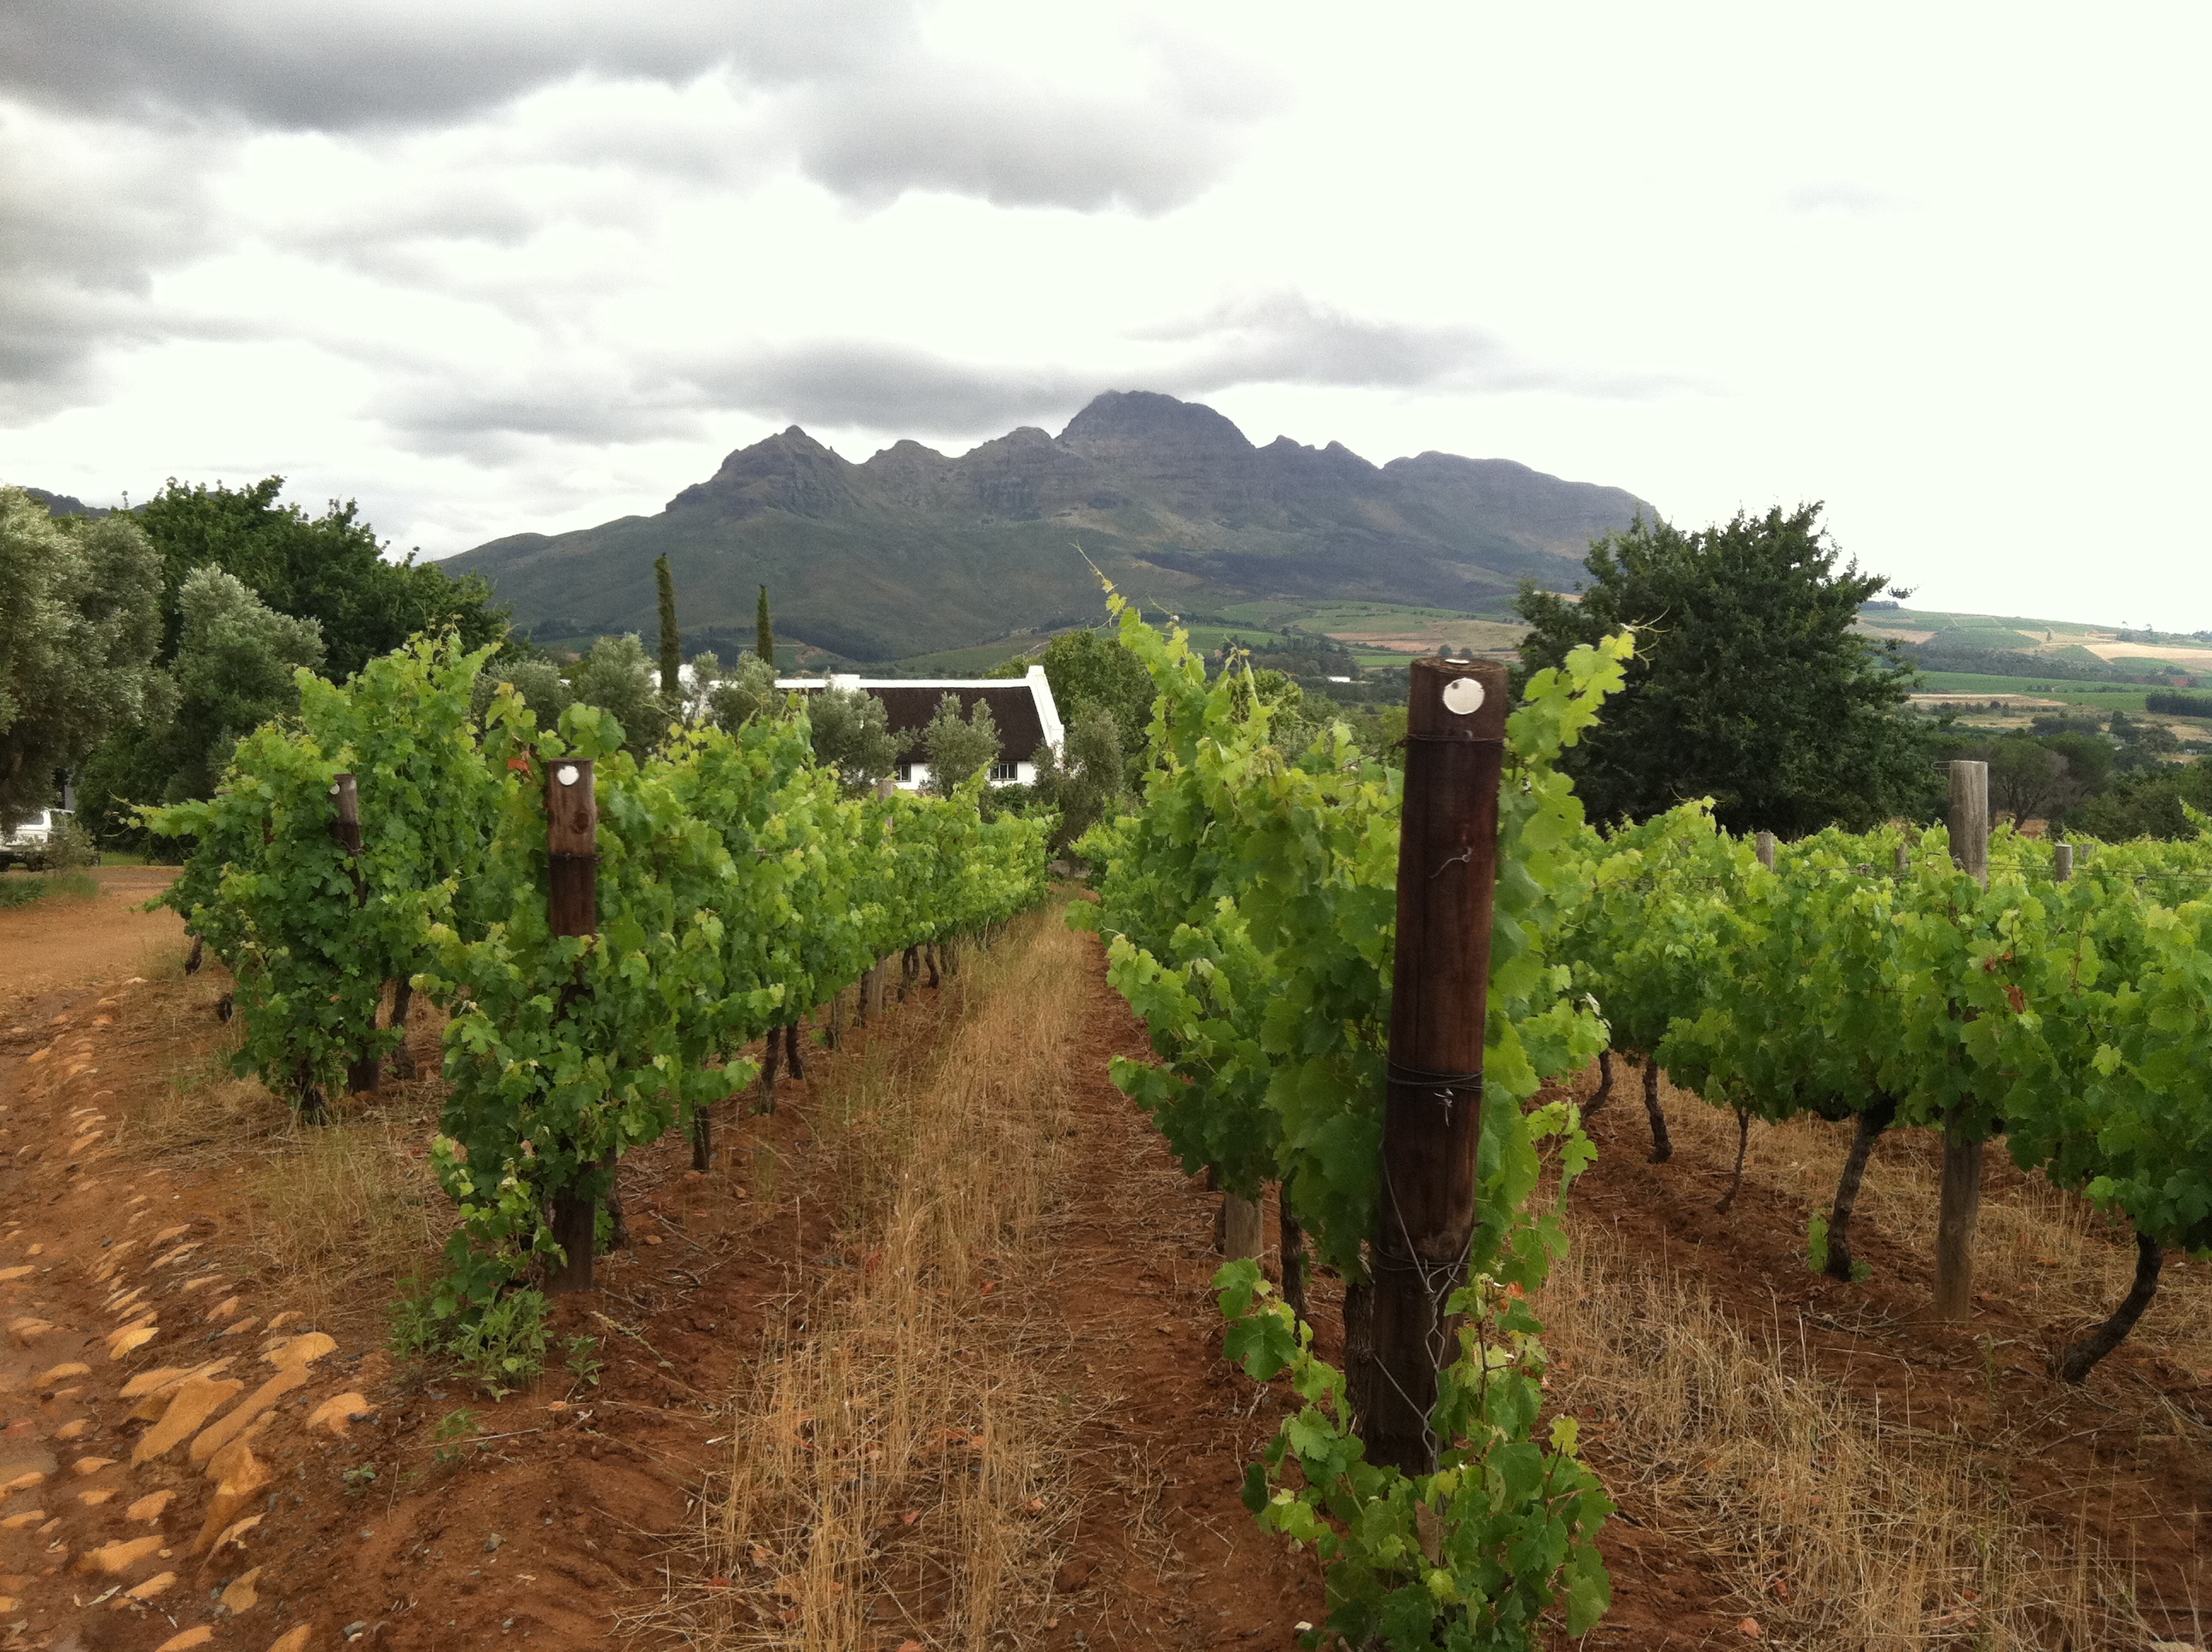 Uma tournée sul-africana do vinho